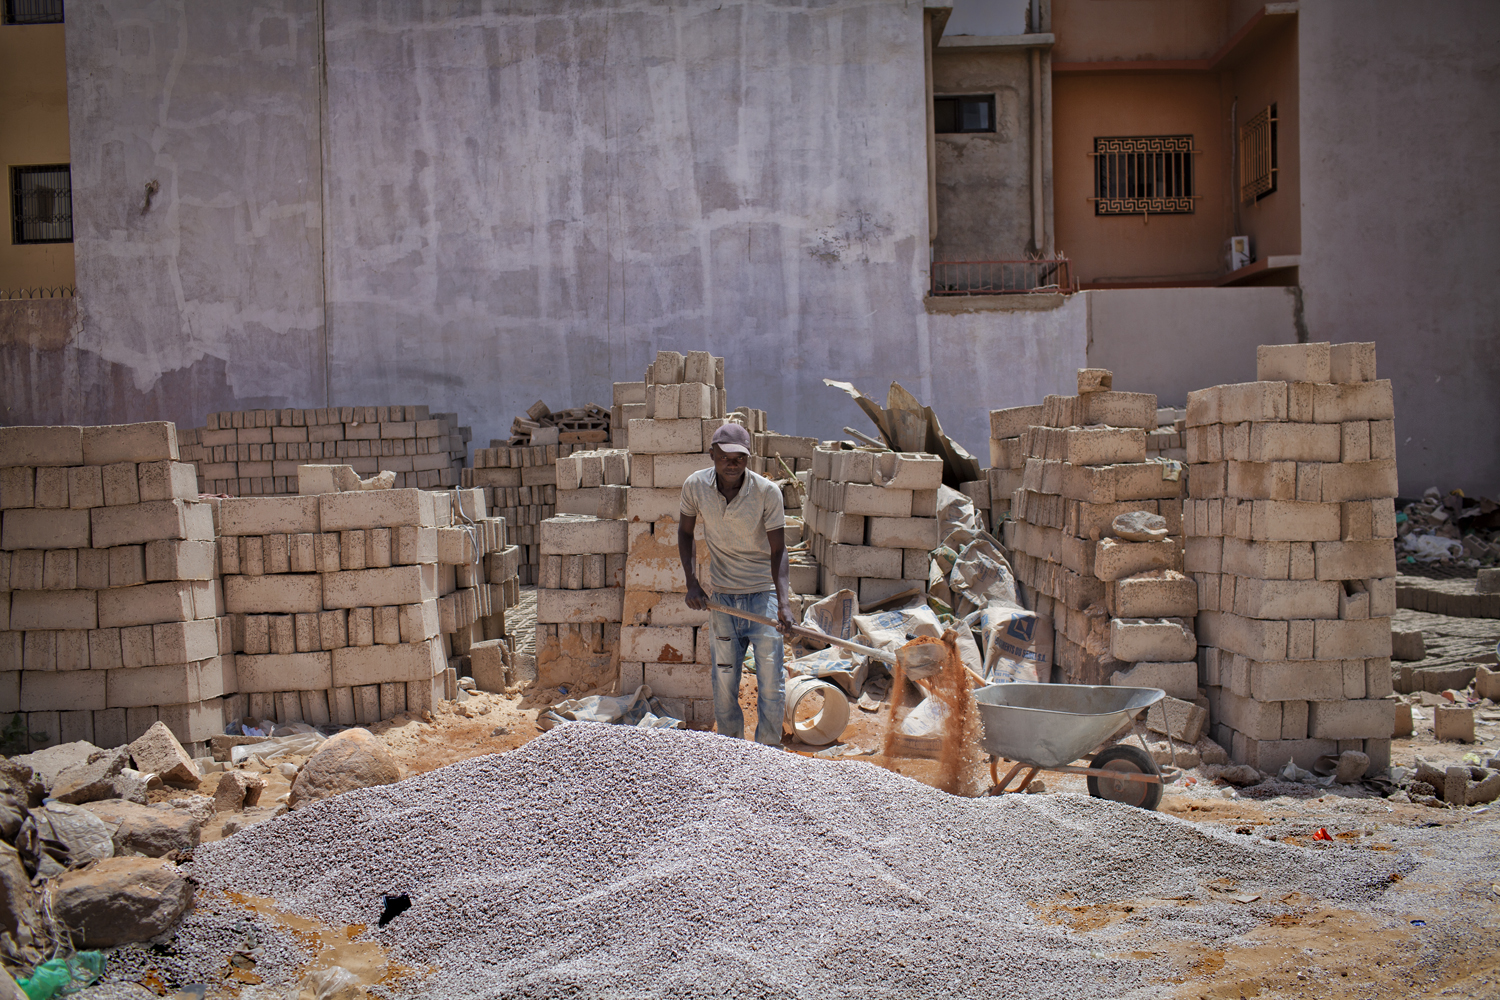 construction_worker_Dakar_2019_NIK_filter_3853.jpg